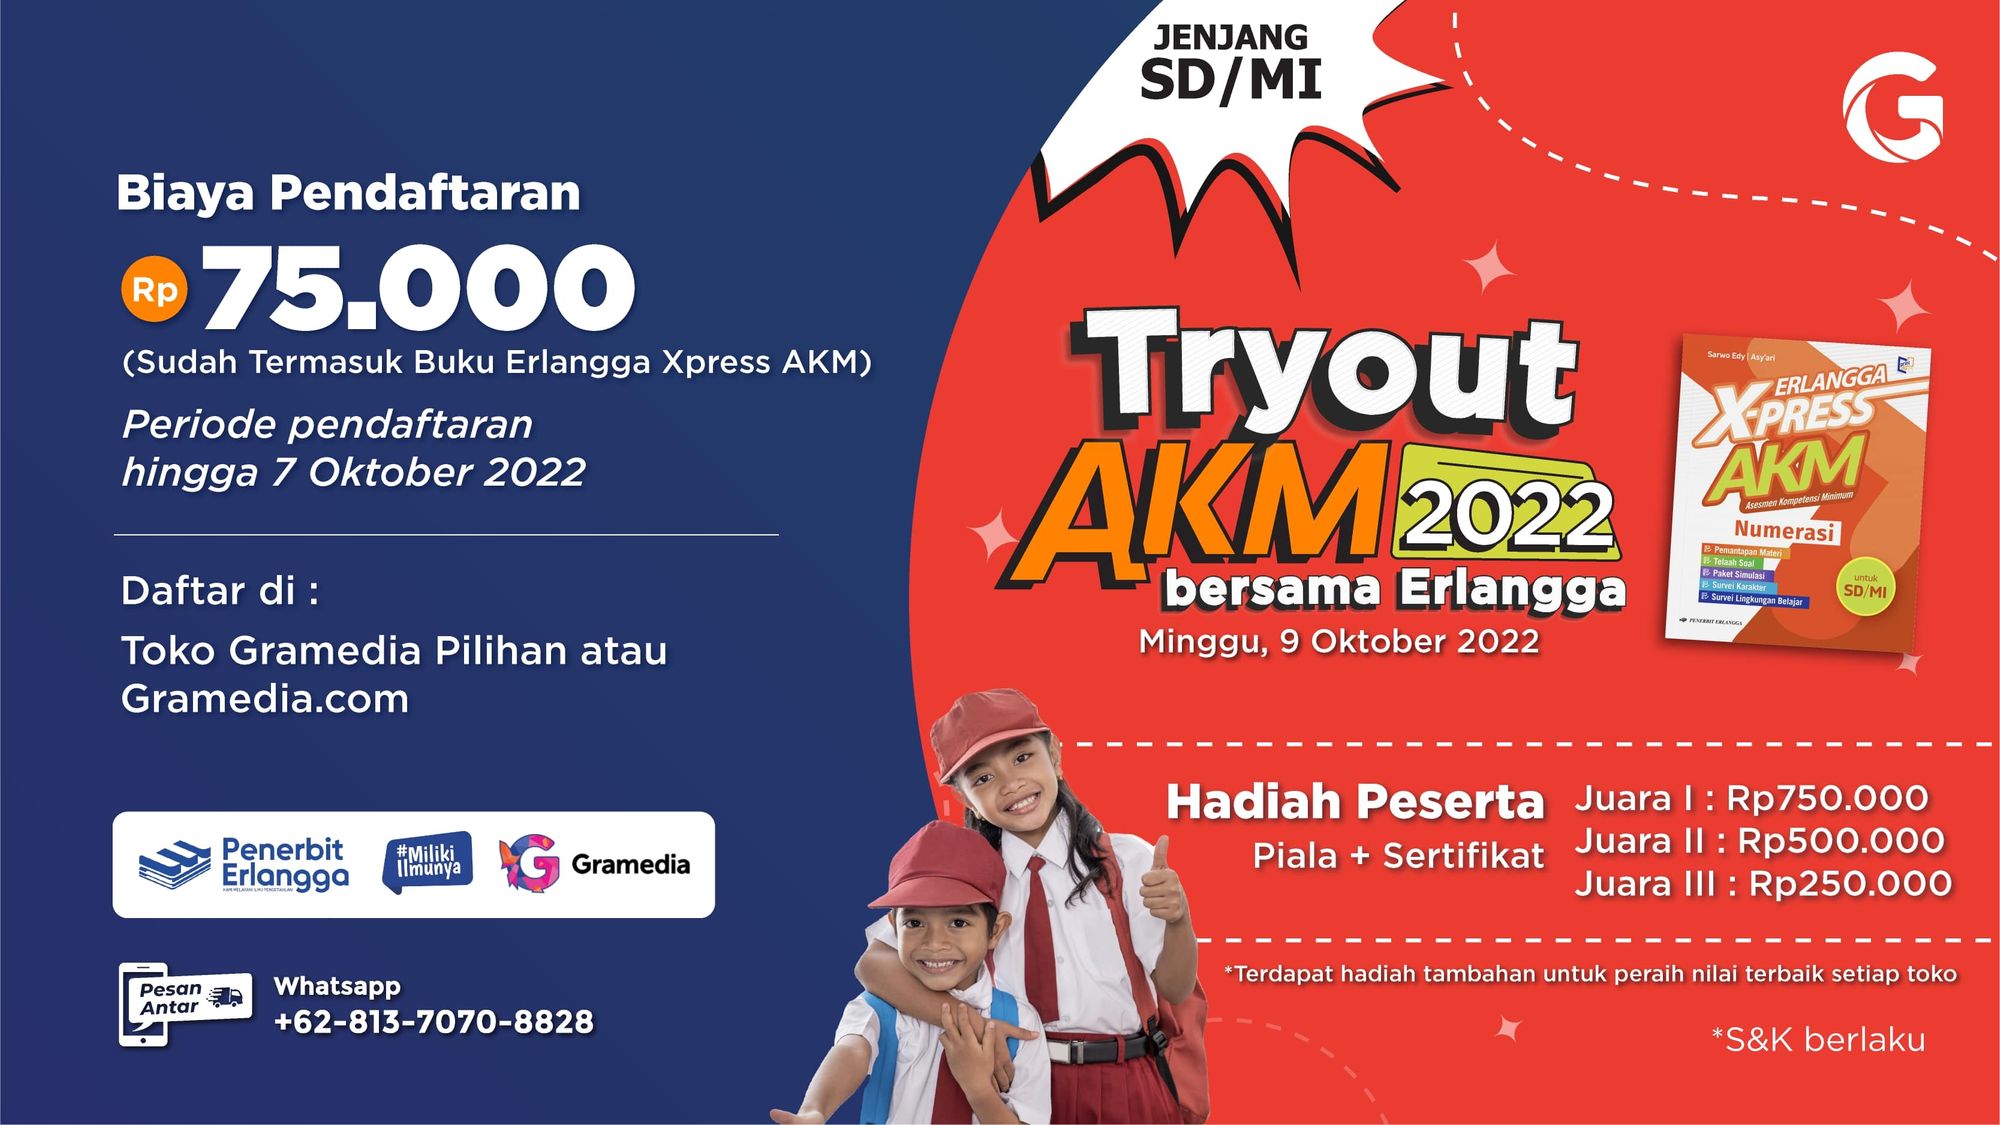 Ikuti Try Out AKM 2022 Bersama Erlangga dan Dapatkan Hadiah Total Jutaan Rupiah!